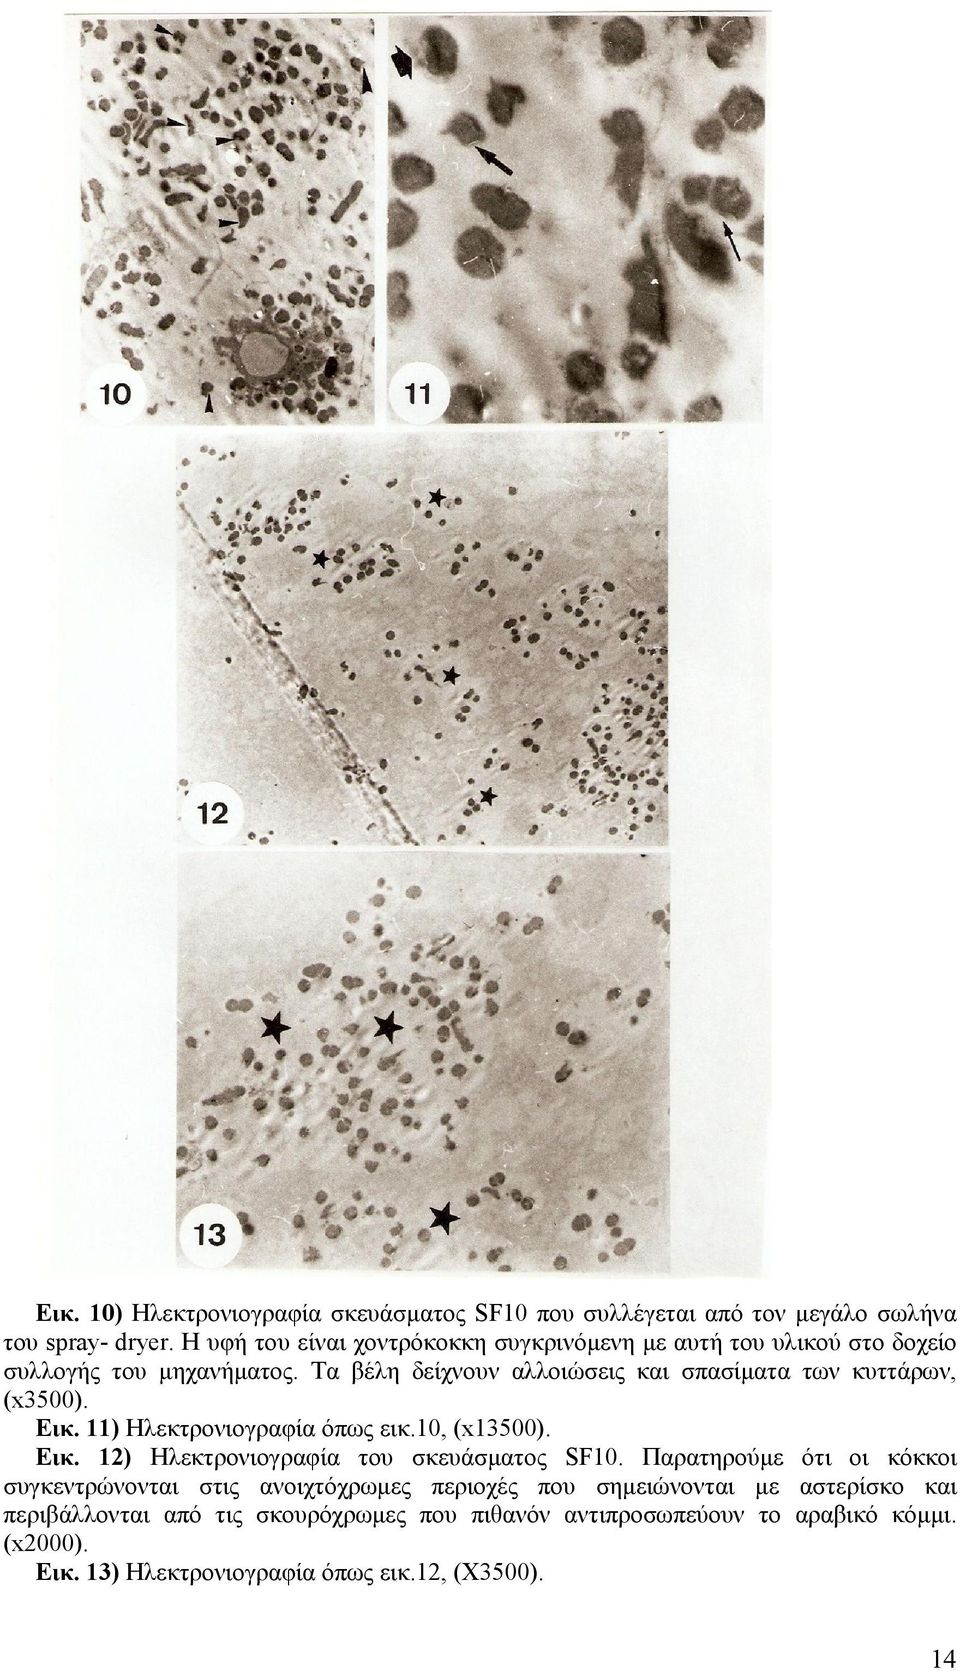 Τα βέλη δείχνουν αλλoιώσεις και σπασίµατα των κυττάρων, (x3500). Εικ. 11) Ηλεκτρονιογραφία όπως εικ.10, (x13500). Εικ. 12) Ηλεκτρονιογραφία του σκευάσµατος SF10.